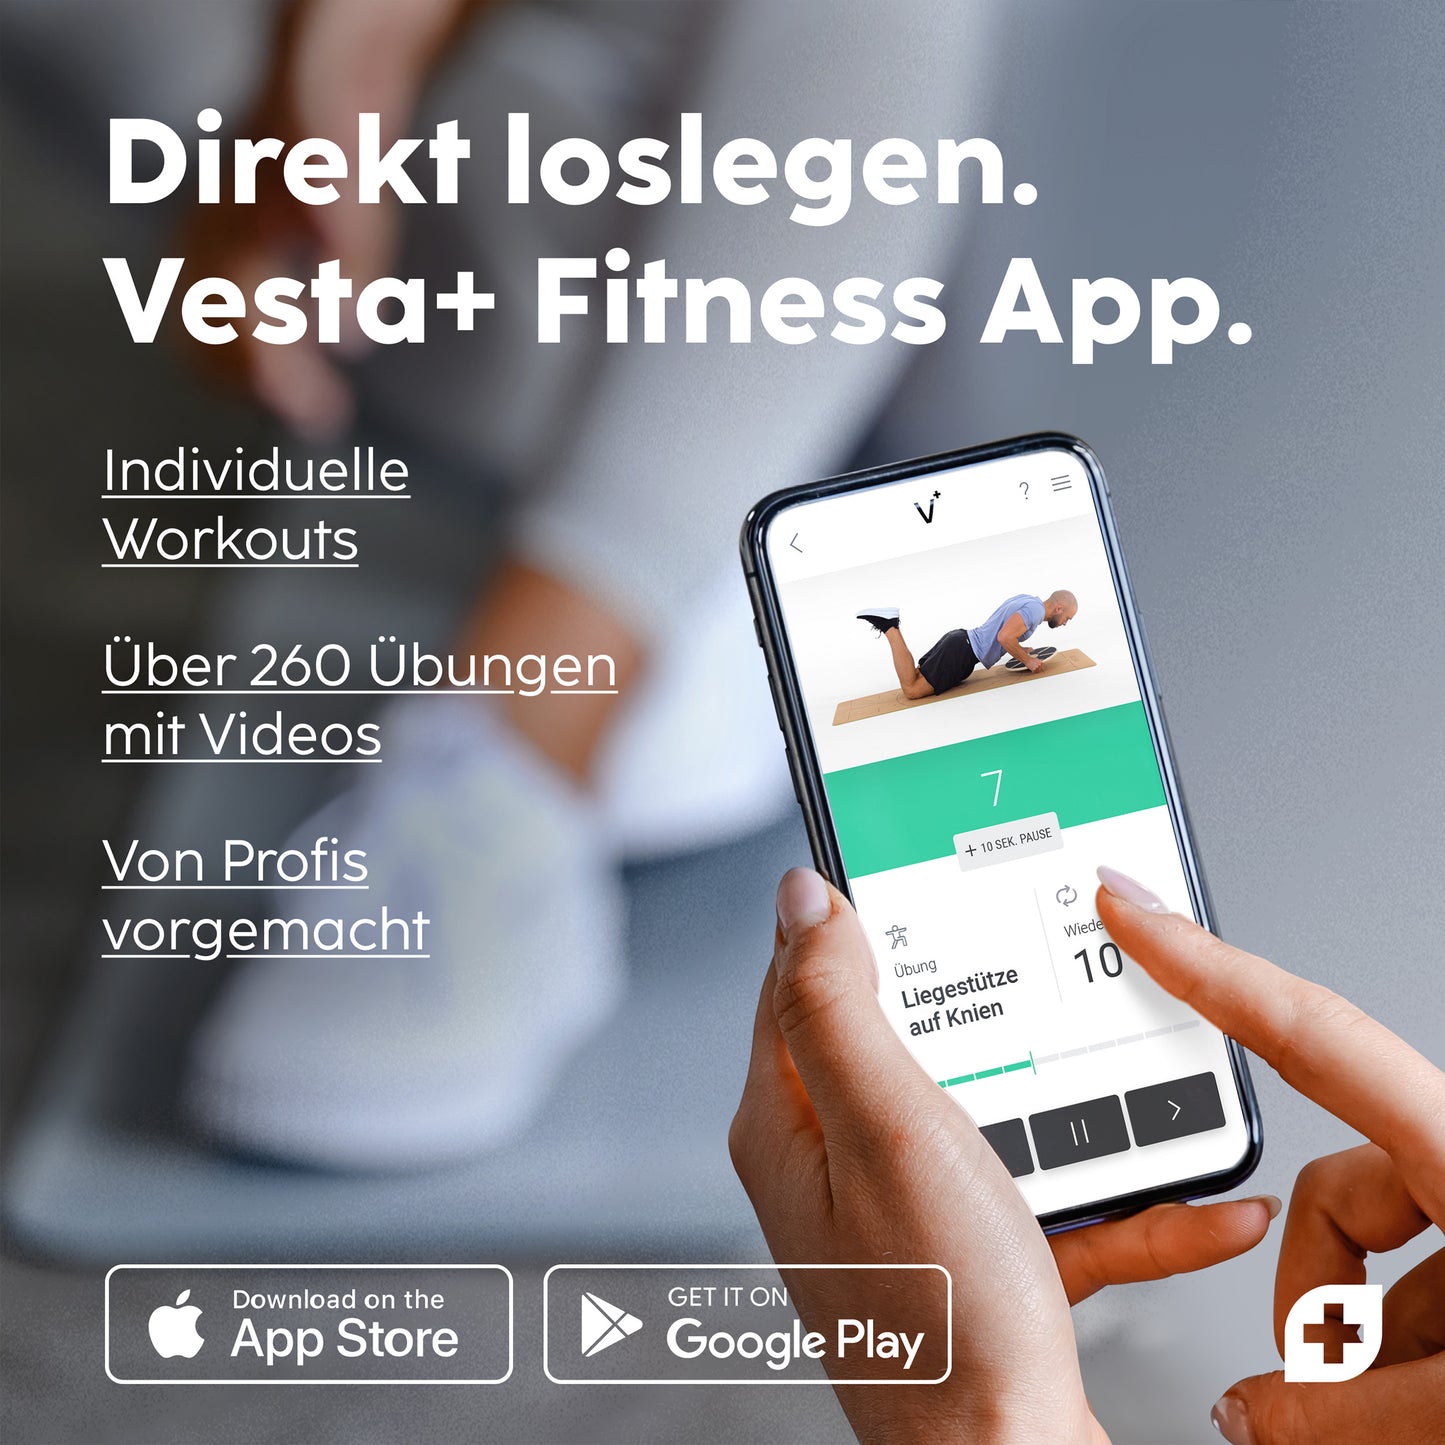 vesta+ Fitness App zeigt individuelle Workouts mit über 260 Übungsvideos, verfügbar für iOS und Android.